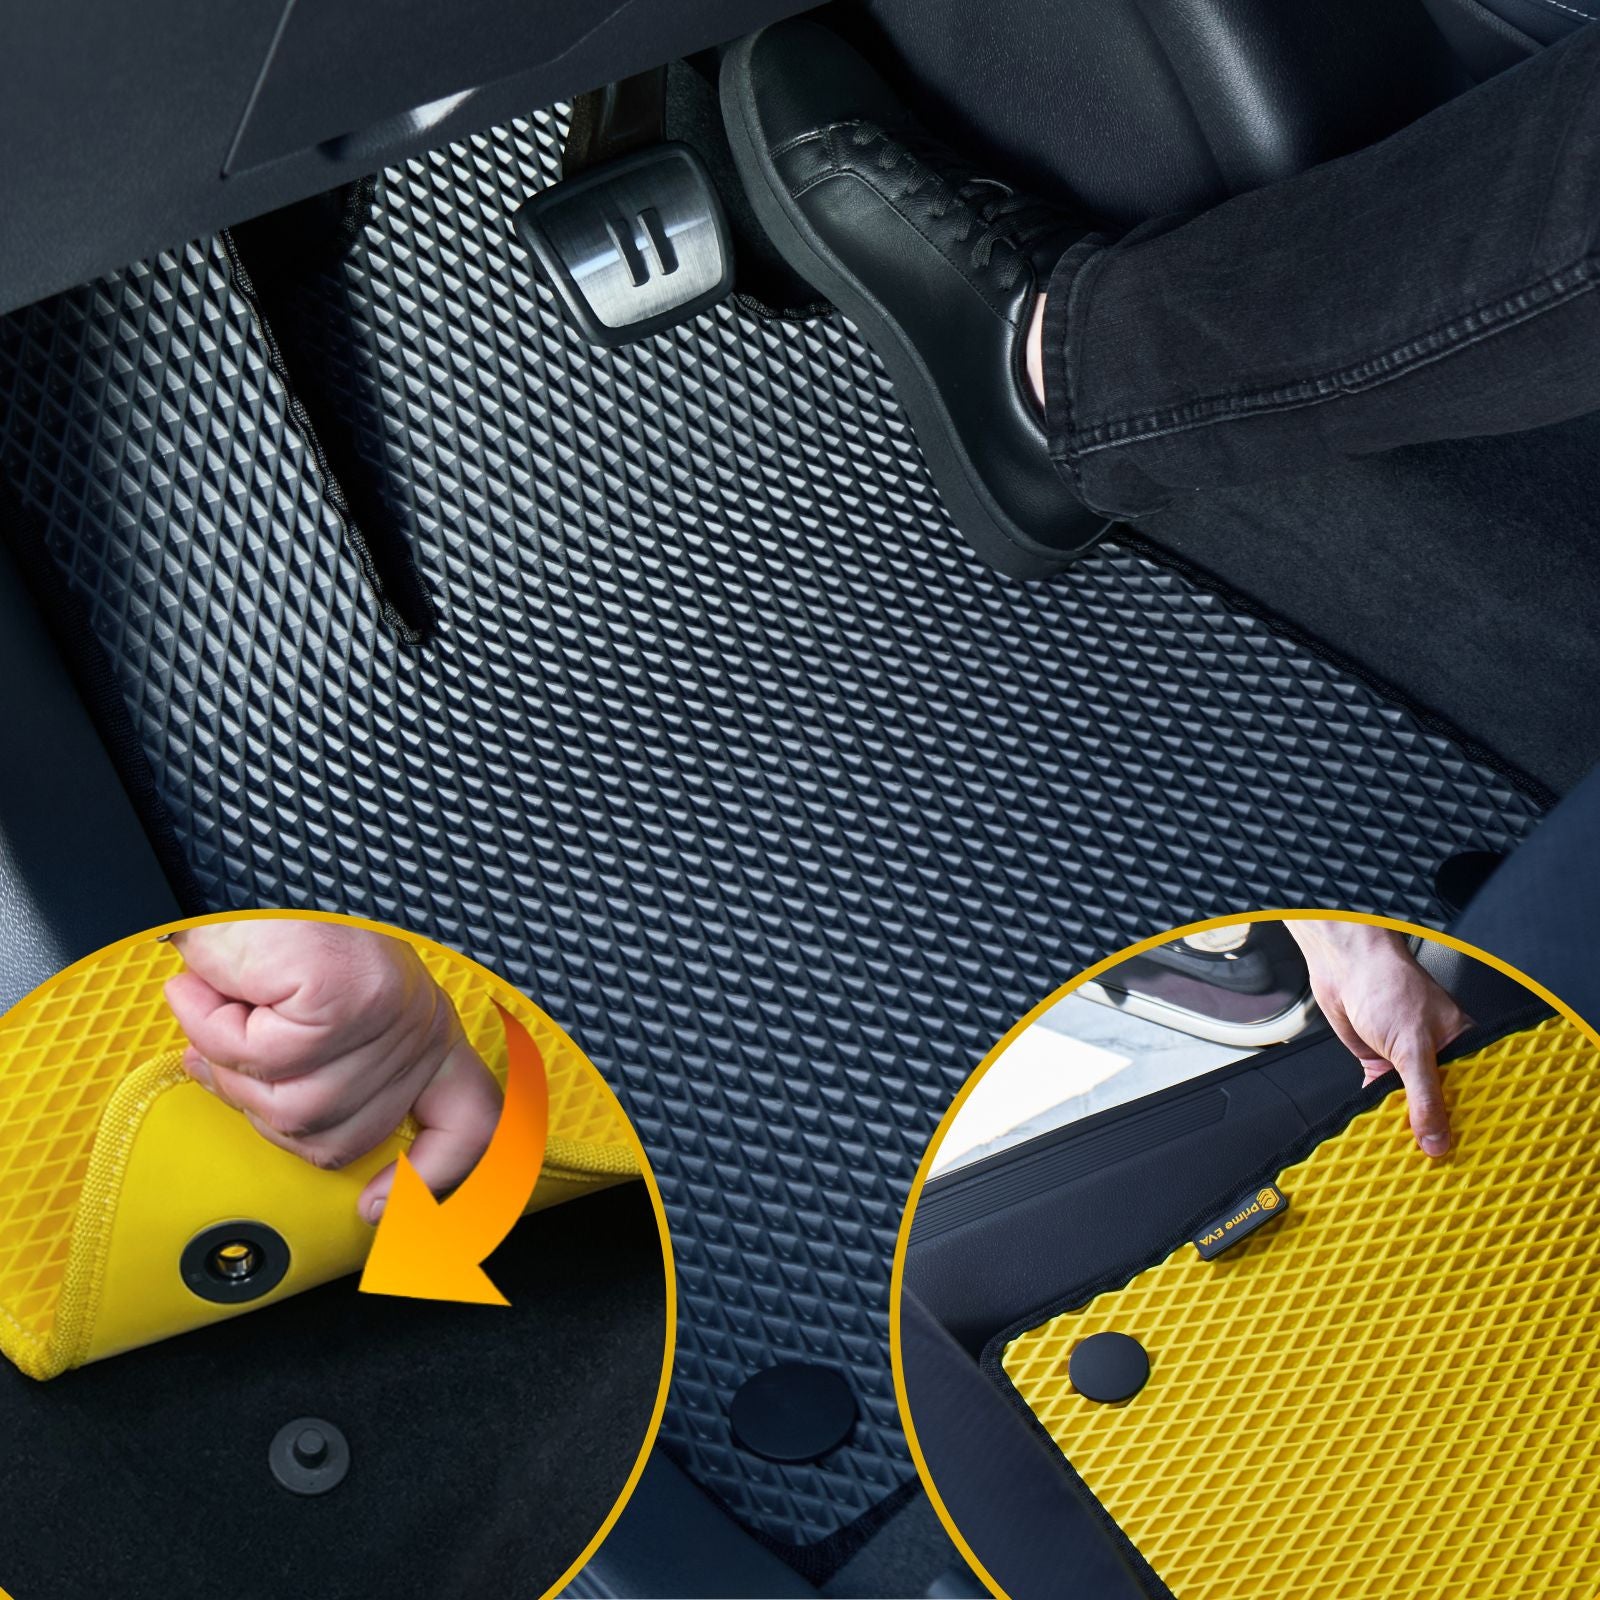 Patvaraus ir tvirtai prigludusio EVA automobilinio kilimėlio montavimas.